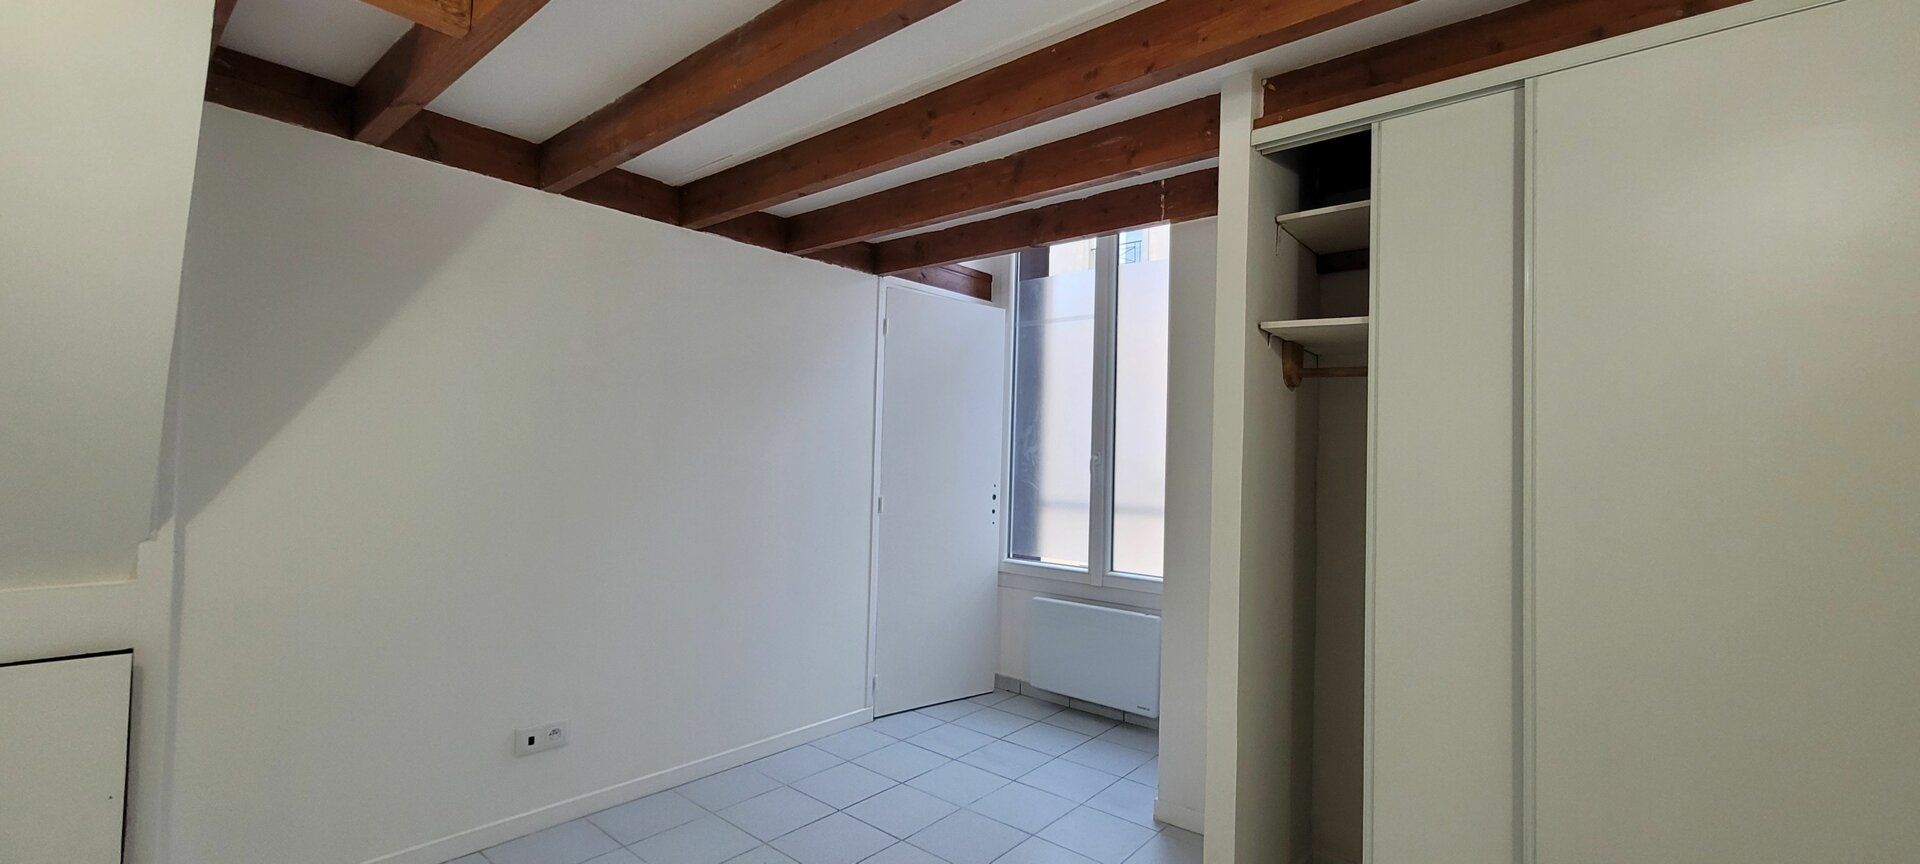 Appartement à louer 2 29.31m2 à Issy-les-Moulineaux vignette-3